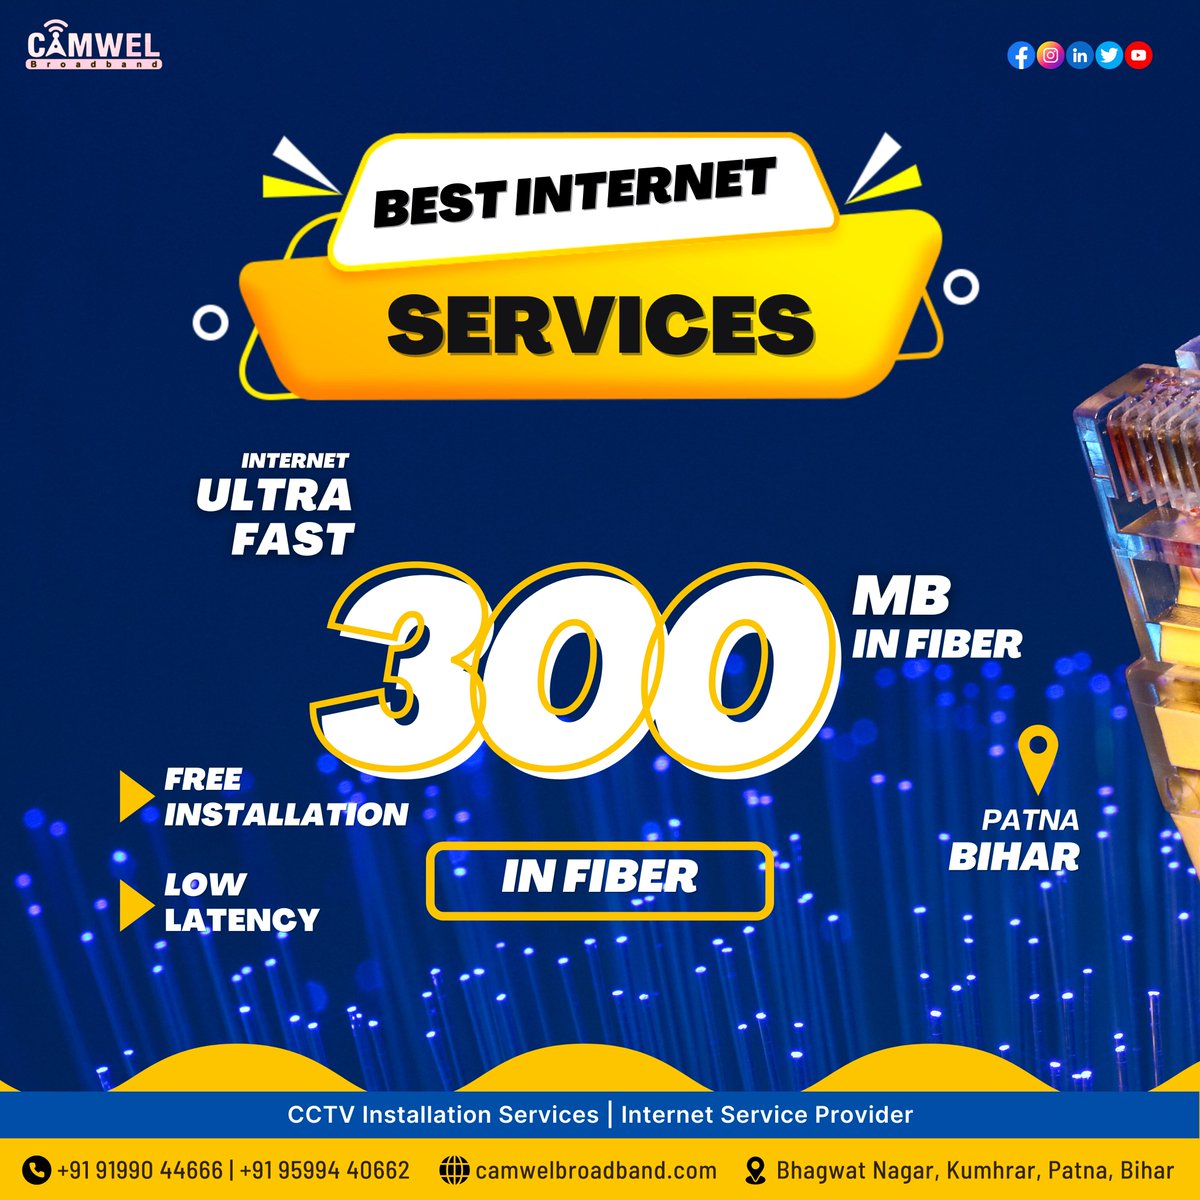 सिर्फ 799 रुपये में पाएं 300Mbps की तेज़ इंटरनेट सेवाएं। अब रुके नहीं, ब्राउज़ करें, स्ट्रीम करें, और ऑनलाइन खेलें, बिना किसी रोक-टोक के! 

#broadband #broadbandinternet #BroadbandForAll #broadbandconnection #broadbandlight #wirelessinternet #wirelessbroadband  #BestWifi #patna